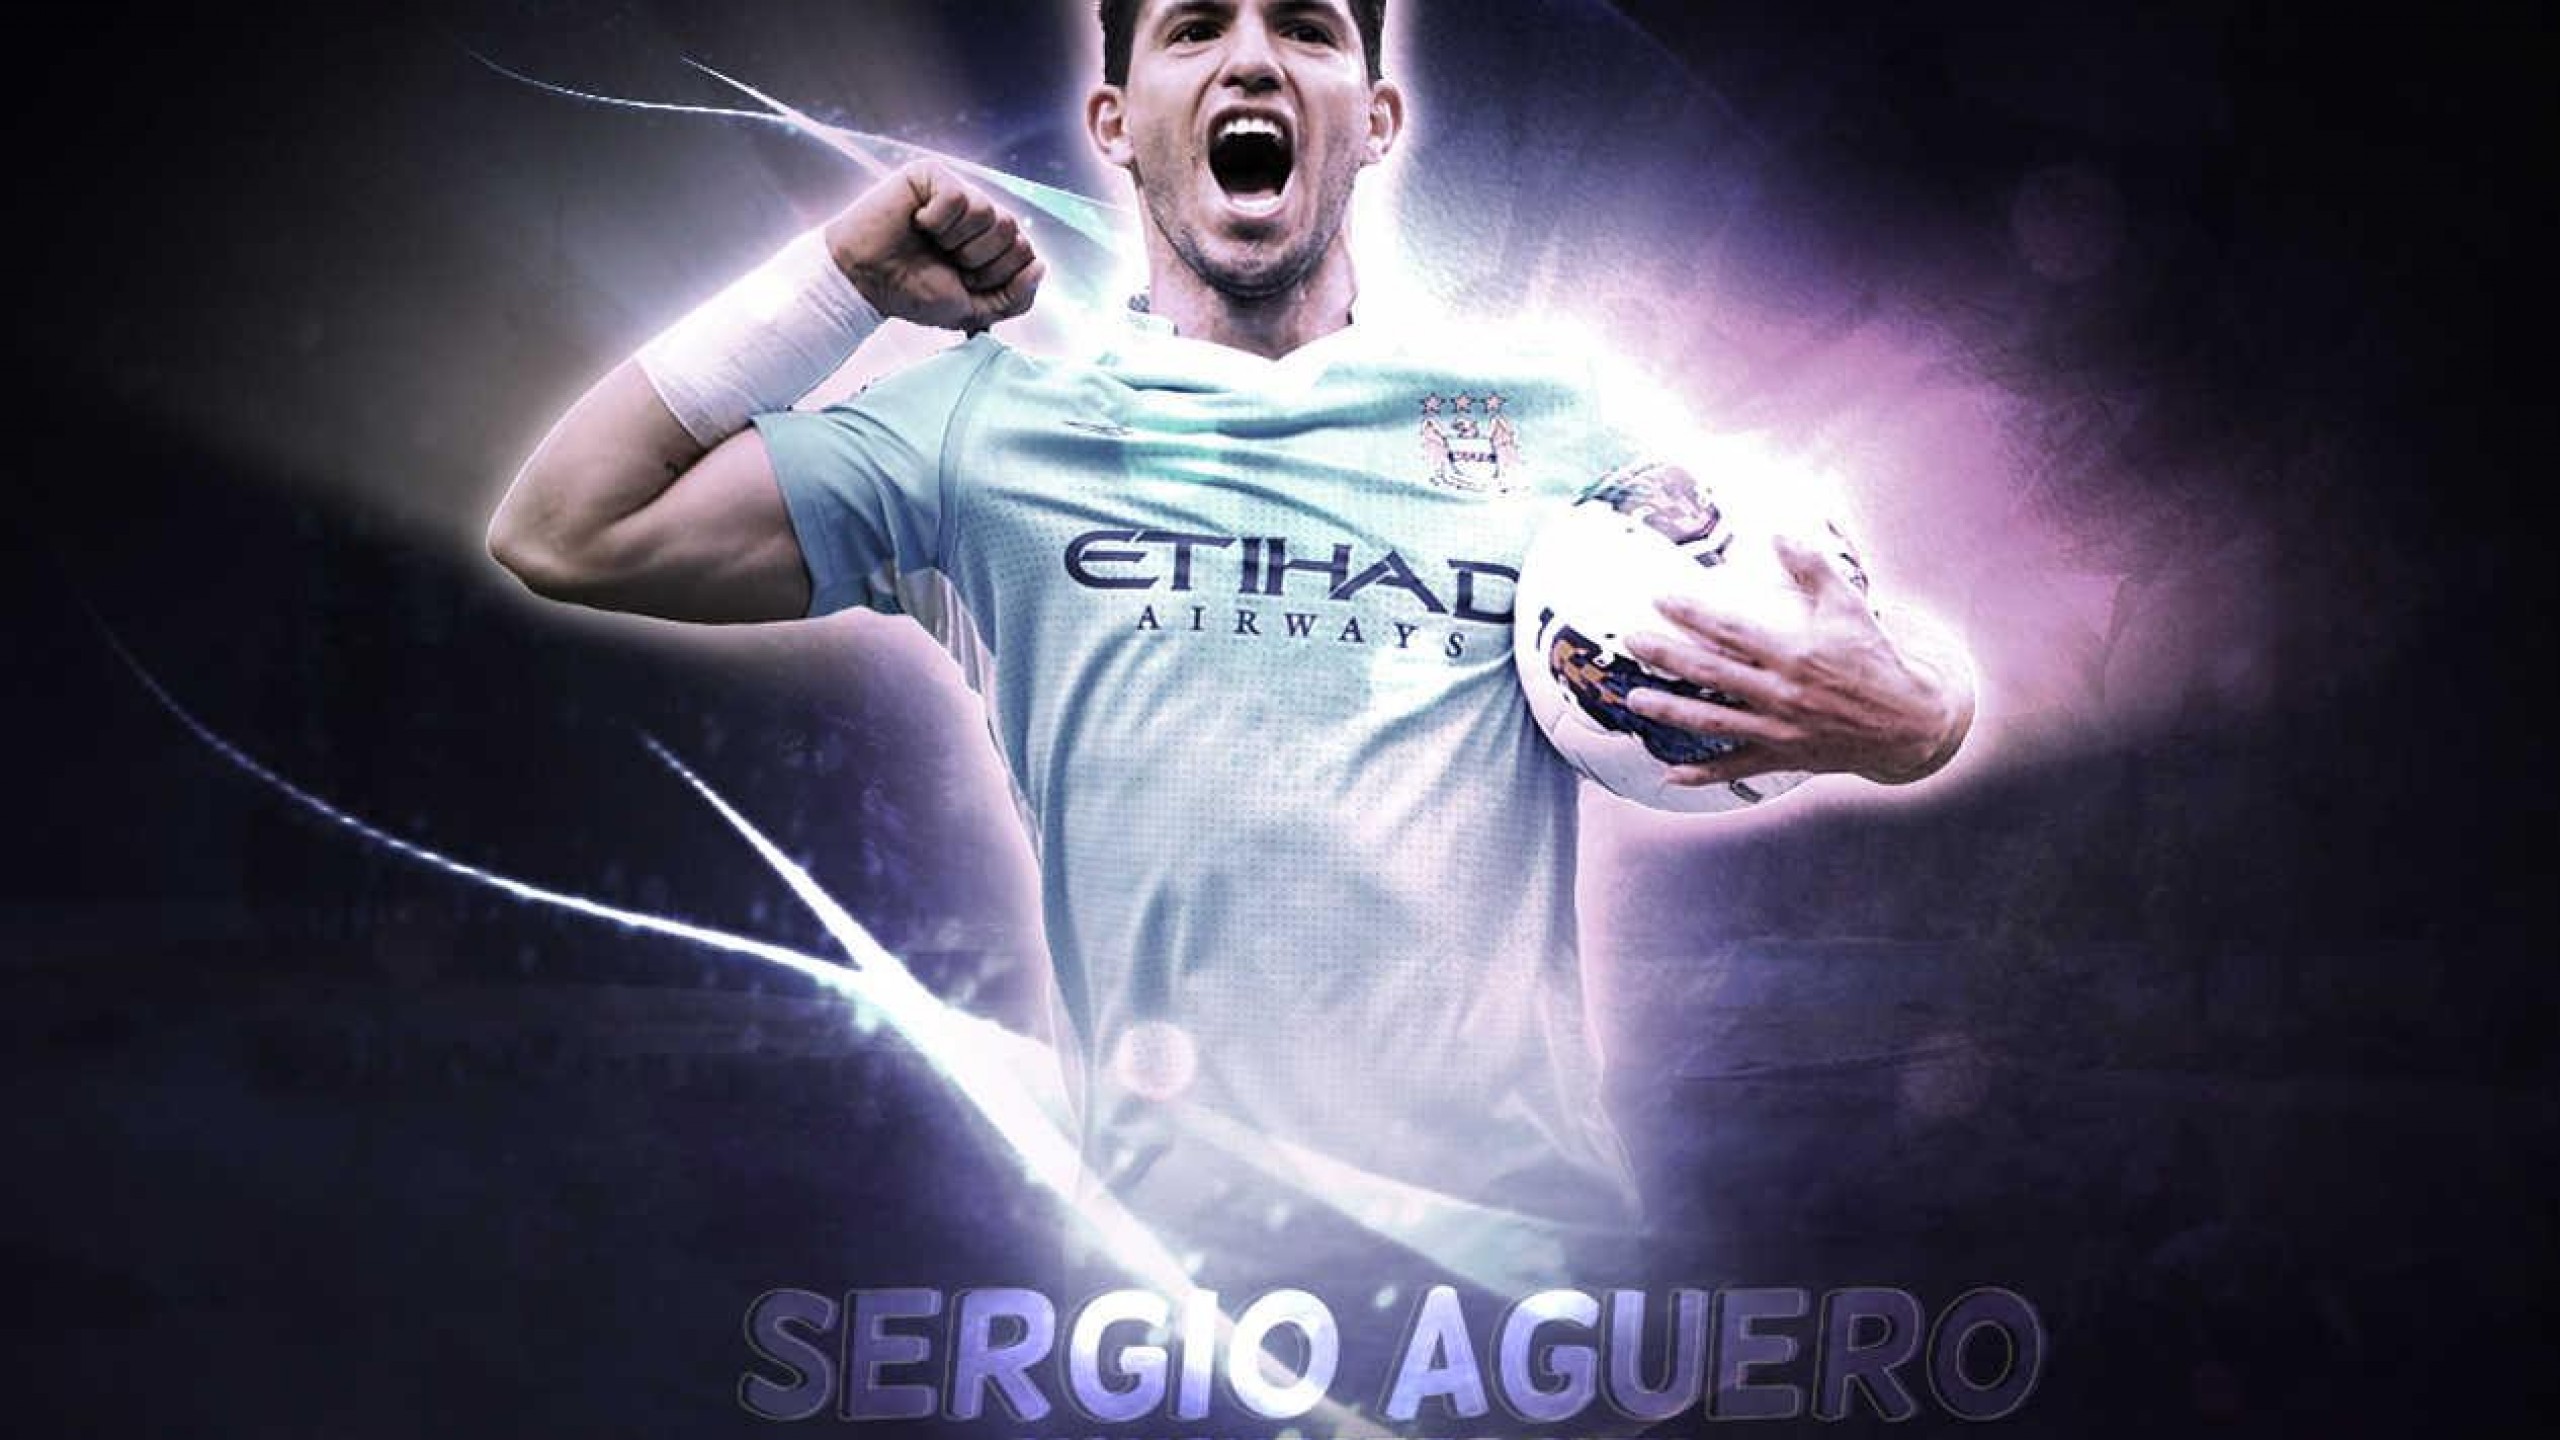 Sergio Aguero Manchester City Wallpaper